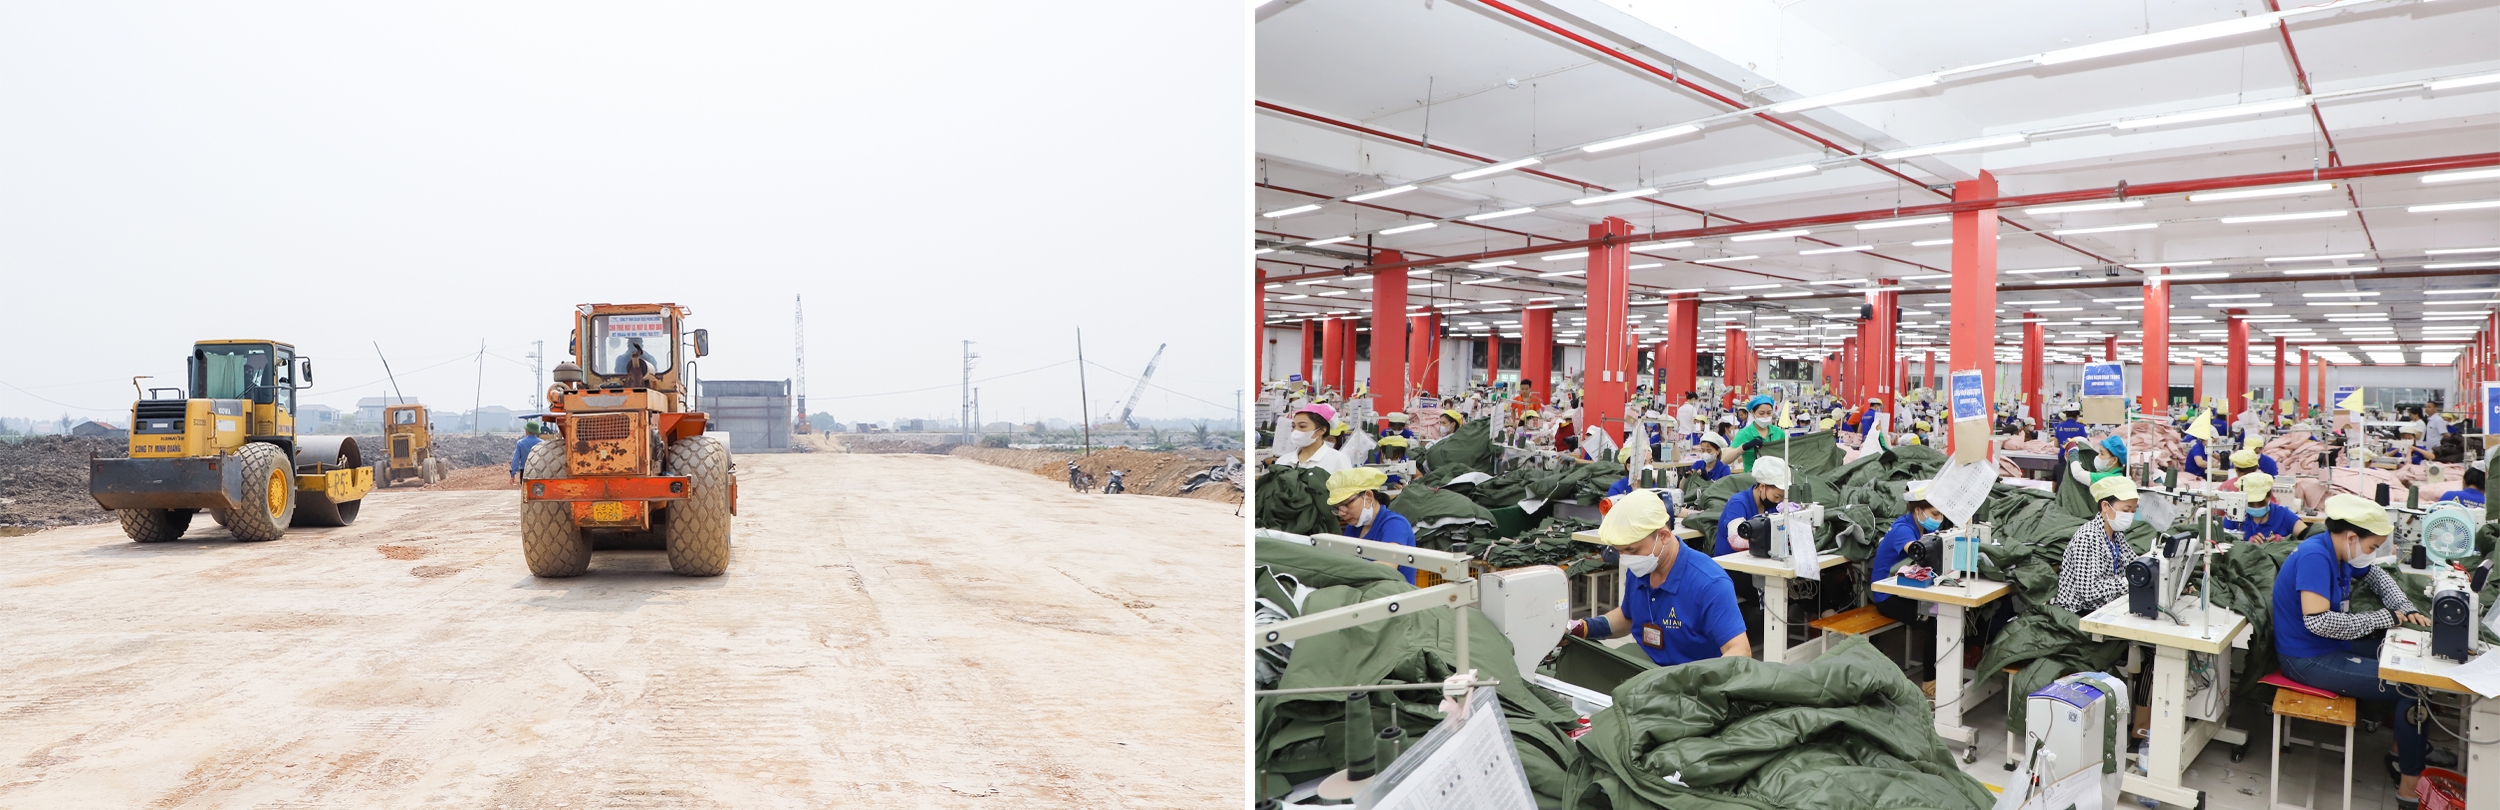 Các đơn vị thi công đang đẩy nhanh tiến độ triển khai dự án đường ven biển từ Nghi Sơn (Thanh Hoá) đến Cửa Lò; Dây chuyền sản xuất tại Công ty CP may Minh Anh - Kim Liên.